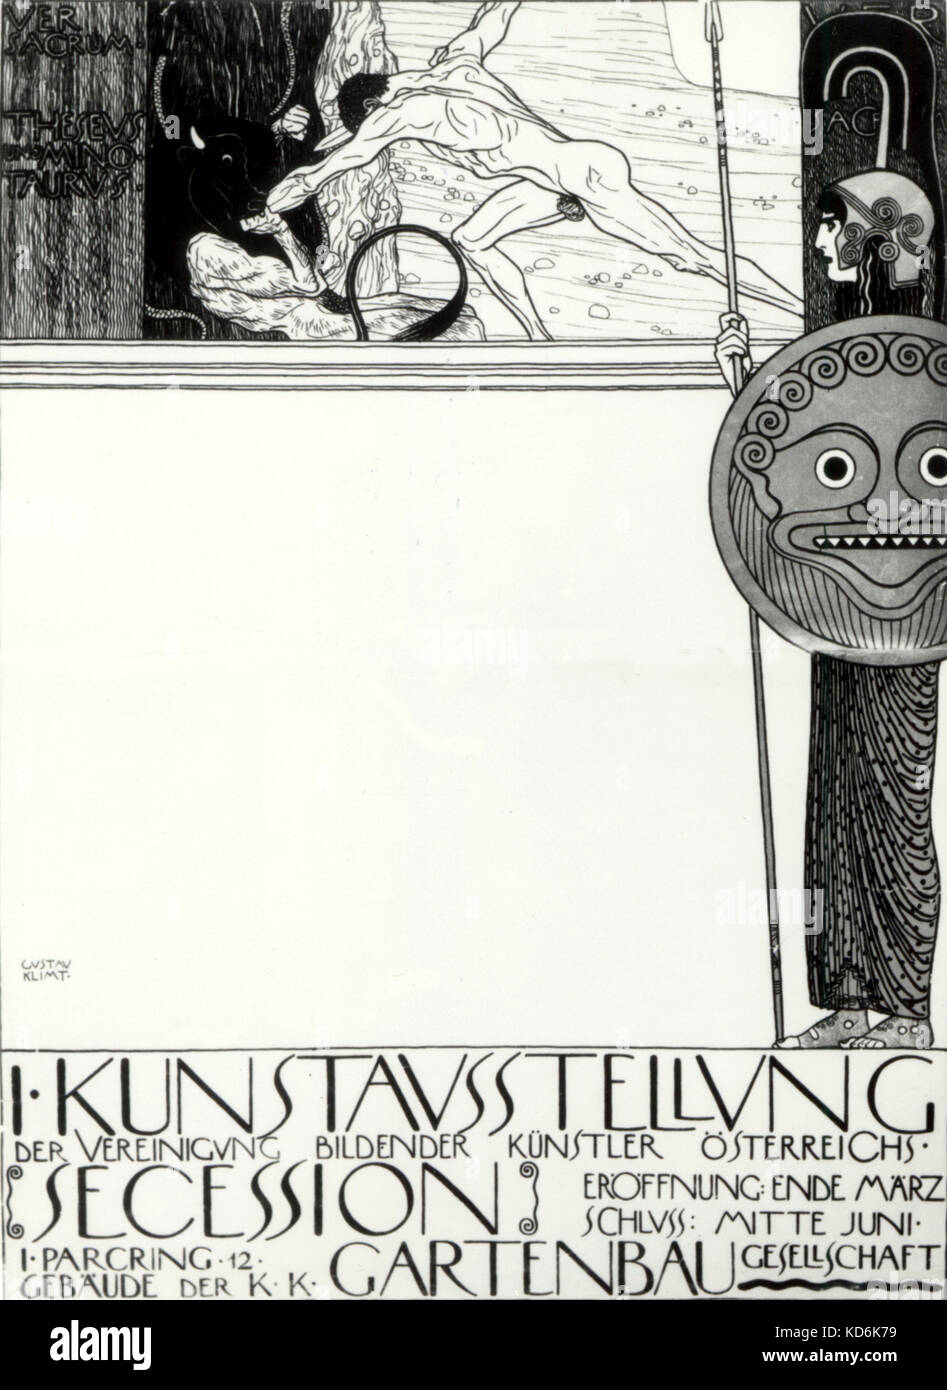 Affiche pour la 1ère exposition de la Sécession viennoise Klimt 1898. Musée autrichien des Arts Appliqués, 14 juillet 1862 GK - Février 6, 1918 Banque D'Images